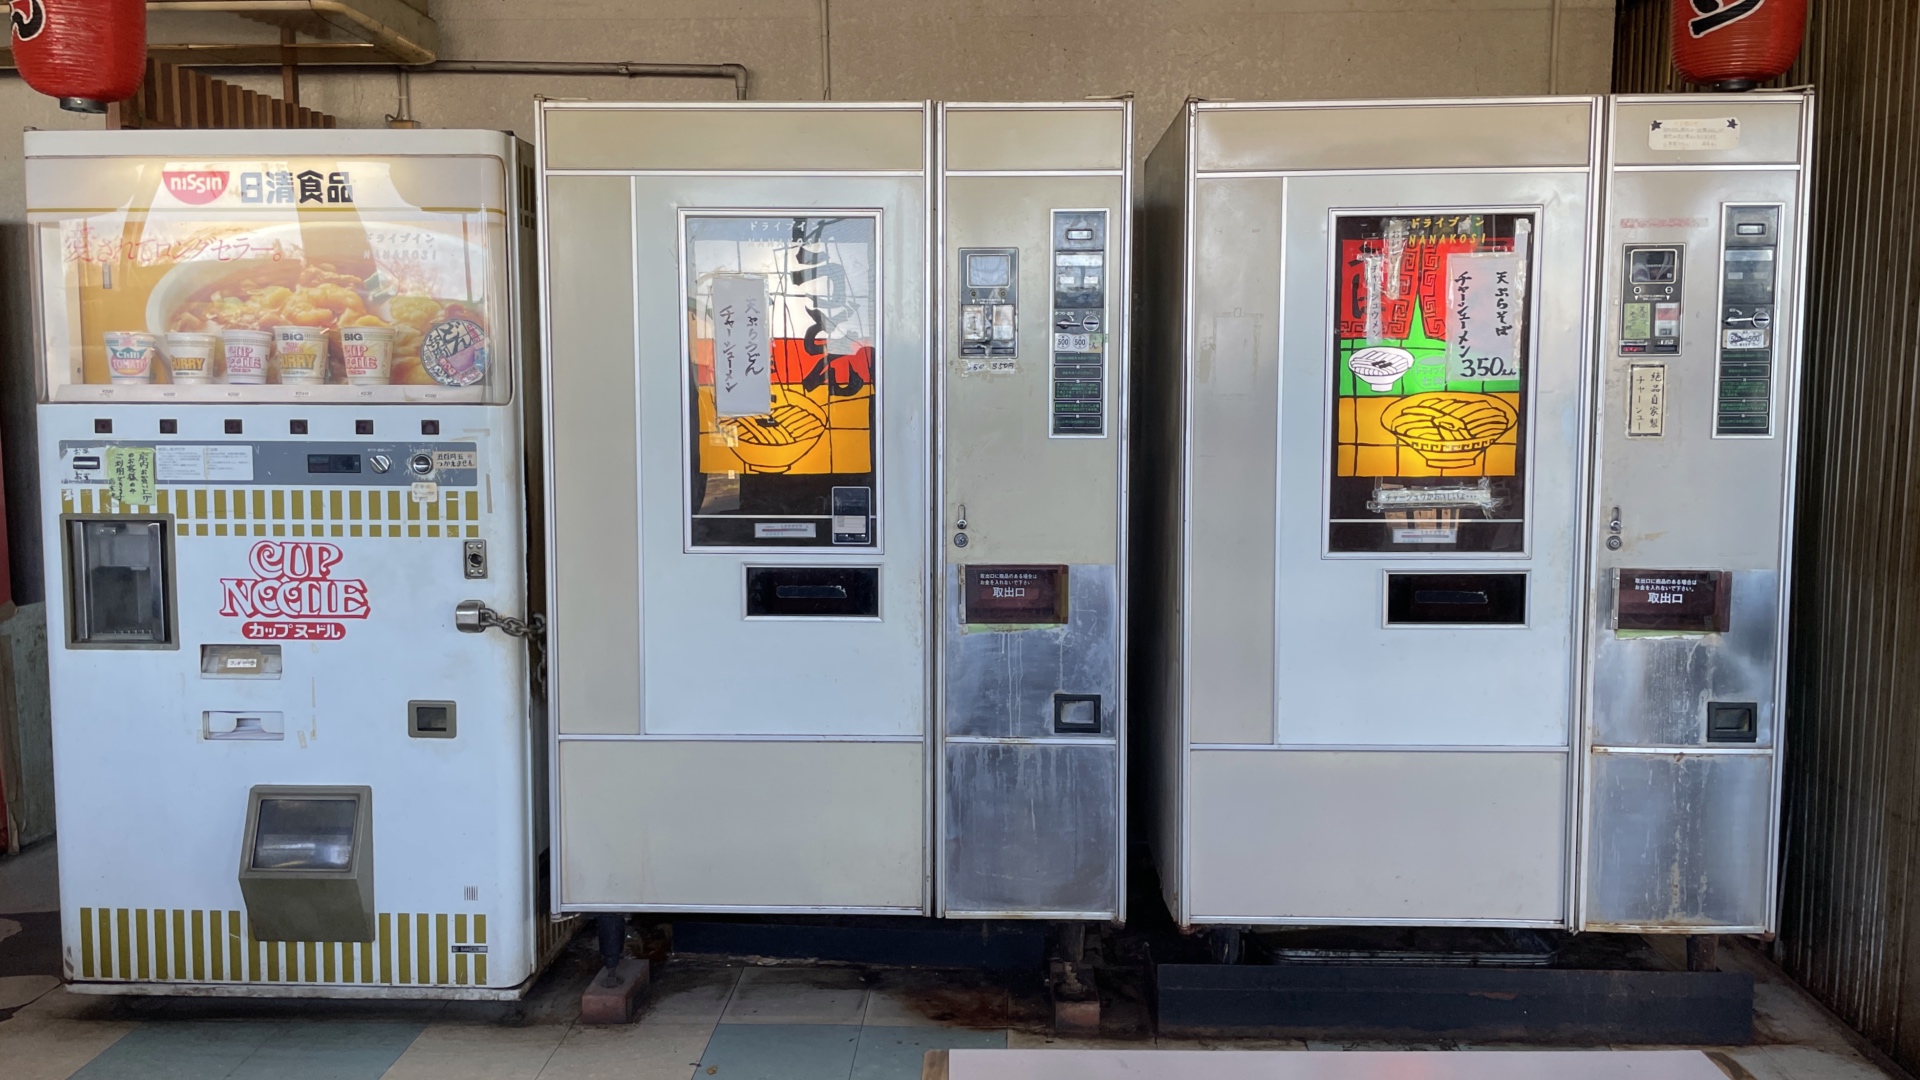 Der Ramen-Automat rechts geniesst besondere Beliebtheit.